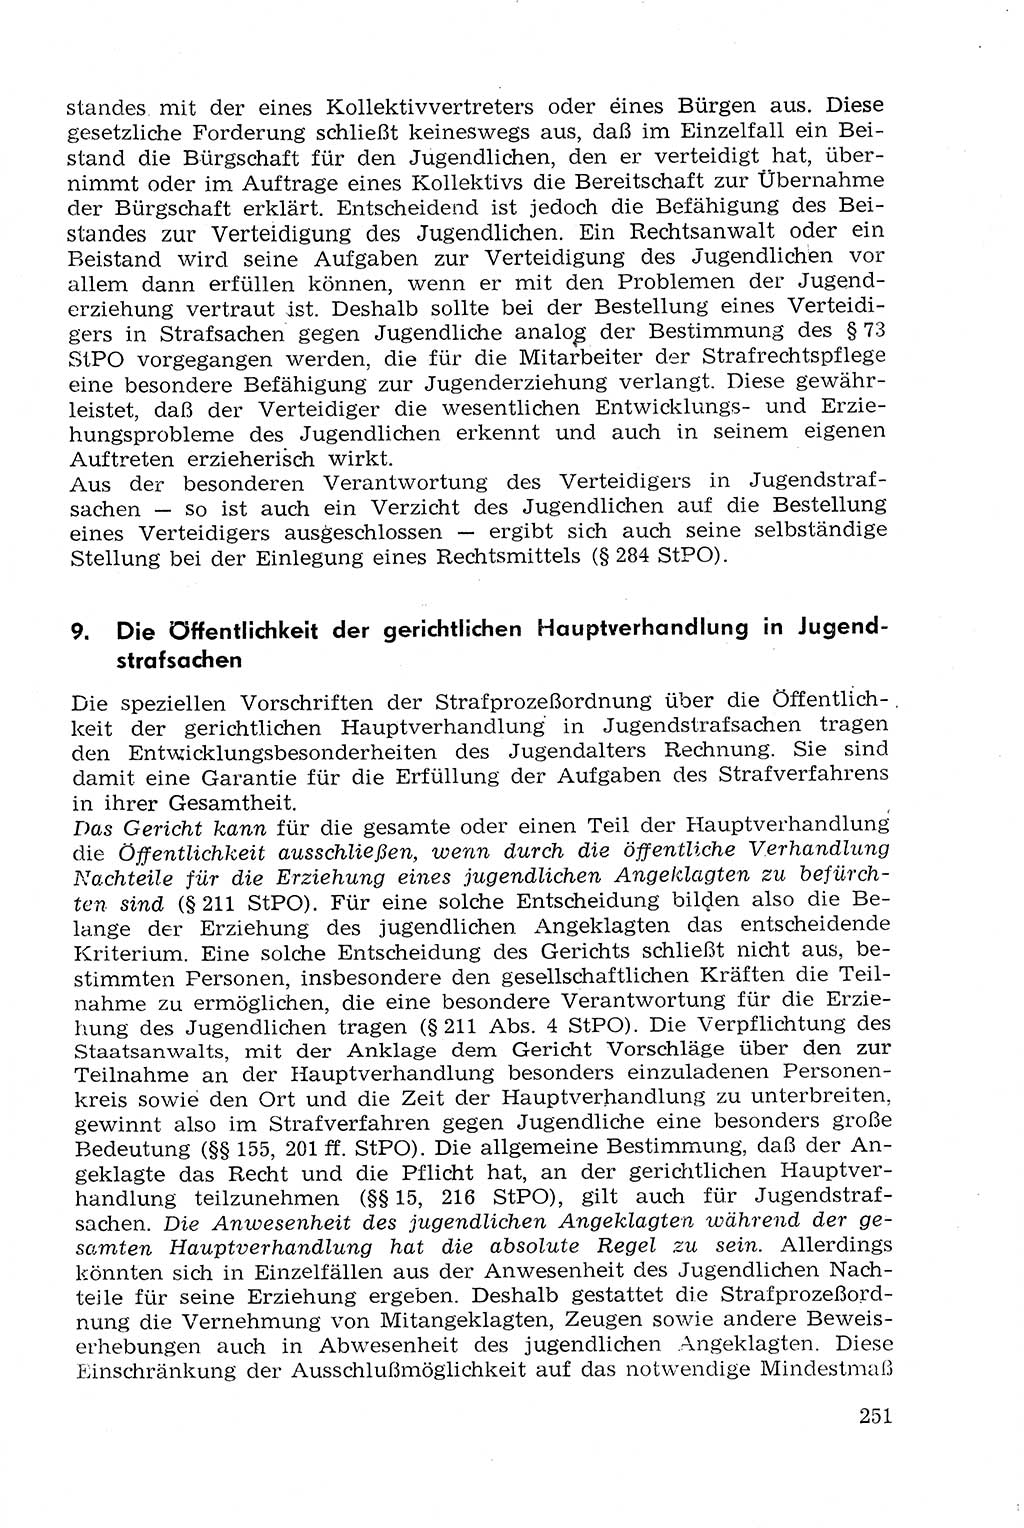 Strafprozeßrecht der DDR (Deutsche Demokratische Republik), Lehrmaterial 1969, Seite 251 (Strafprozeßr. DDR Lehrmat. 1969, S. 251)